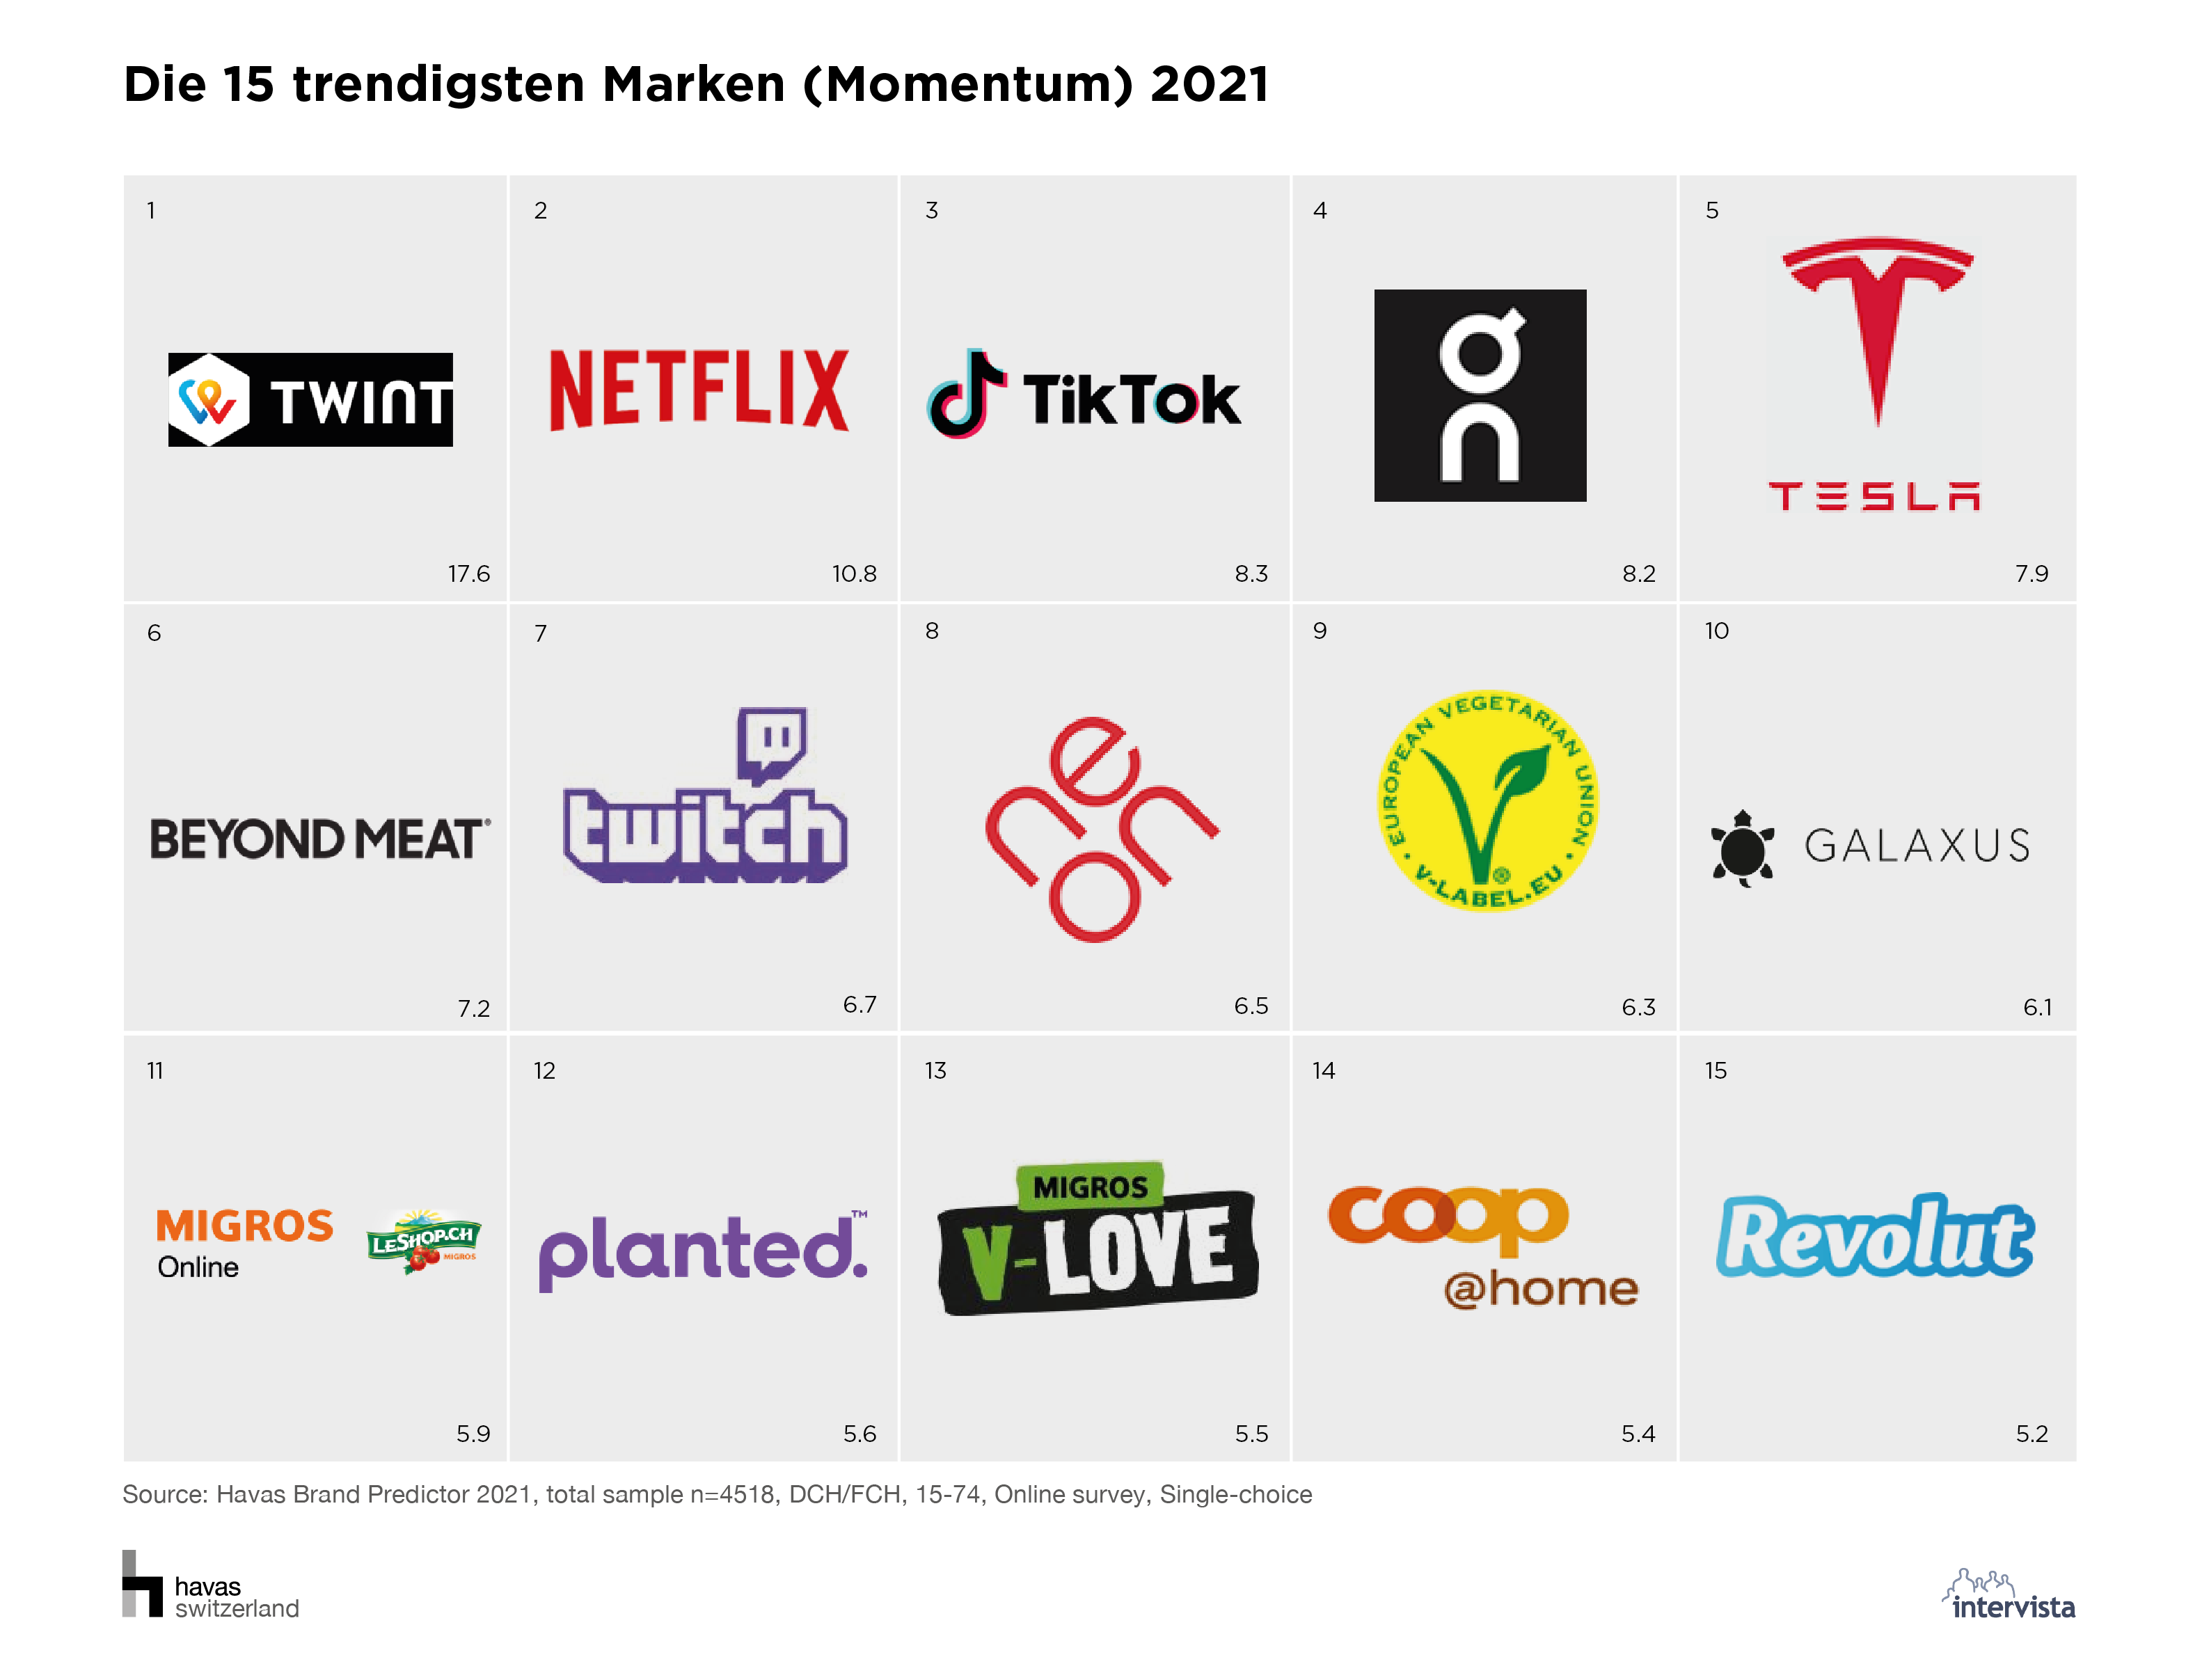 02_Die 15 trendigsten Marken (Momentum) 2021